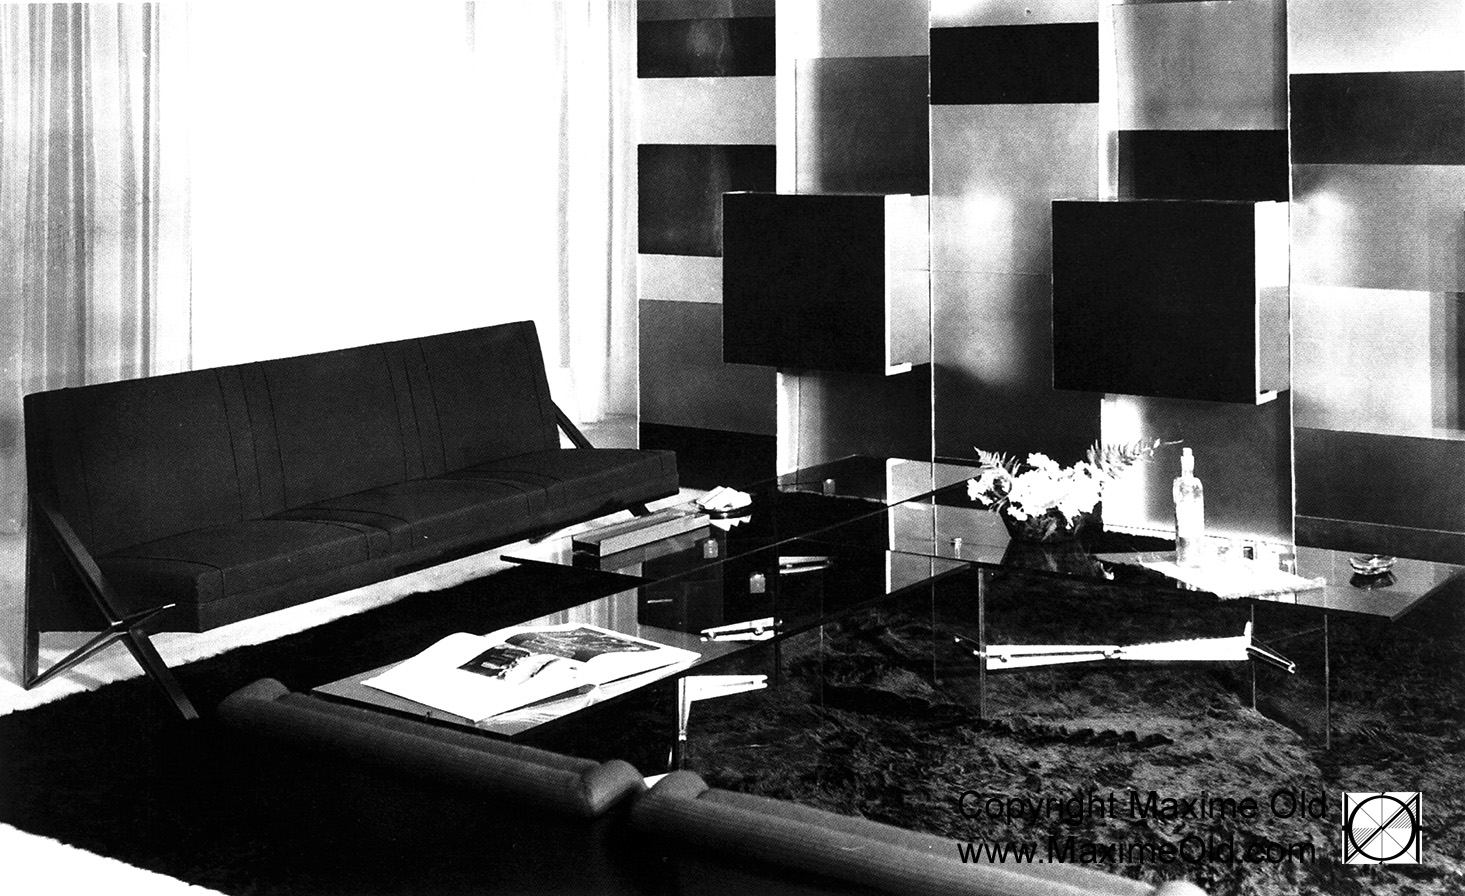 Paquebot France Iceberg Table Maxime Old, Modern Art Furniture Designer